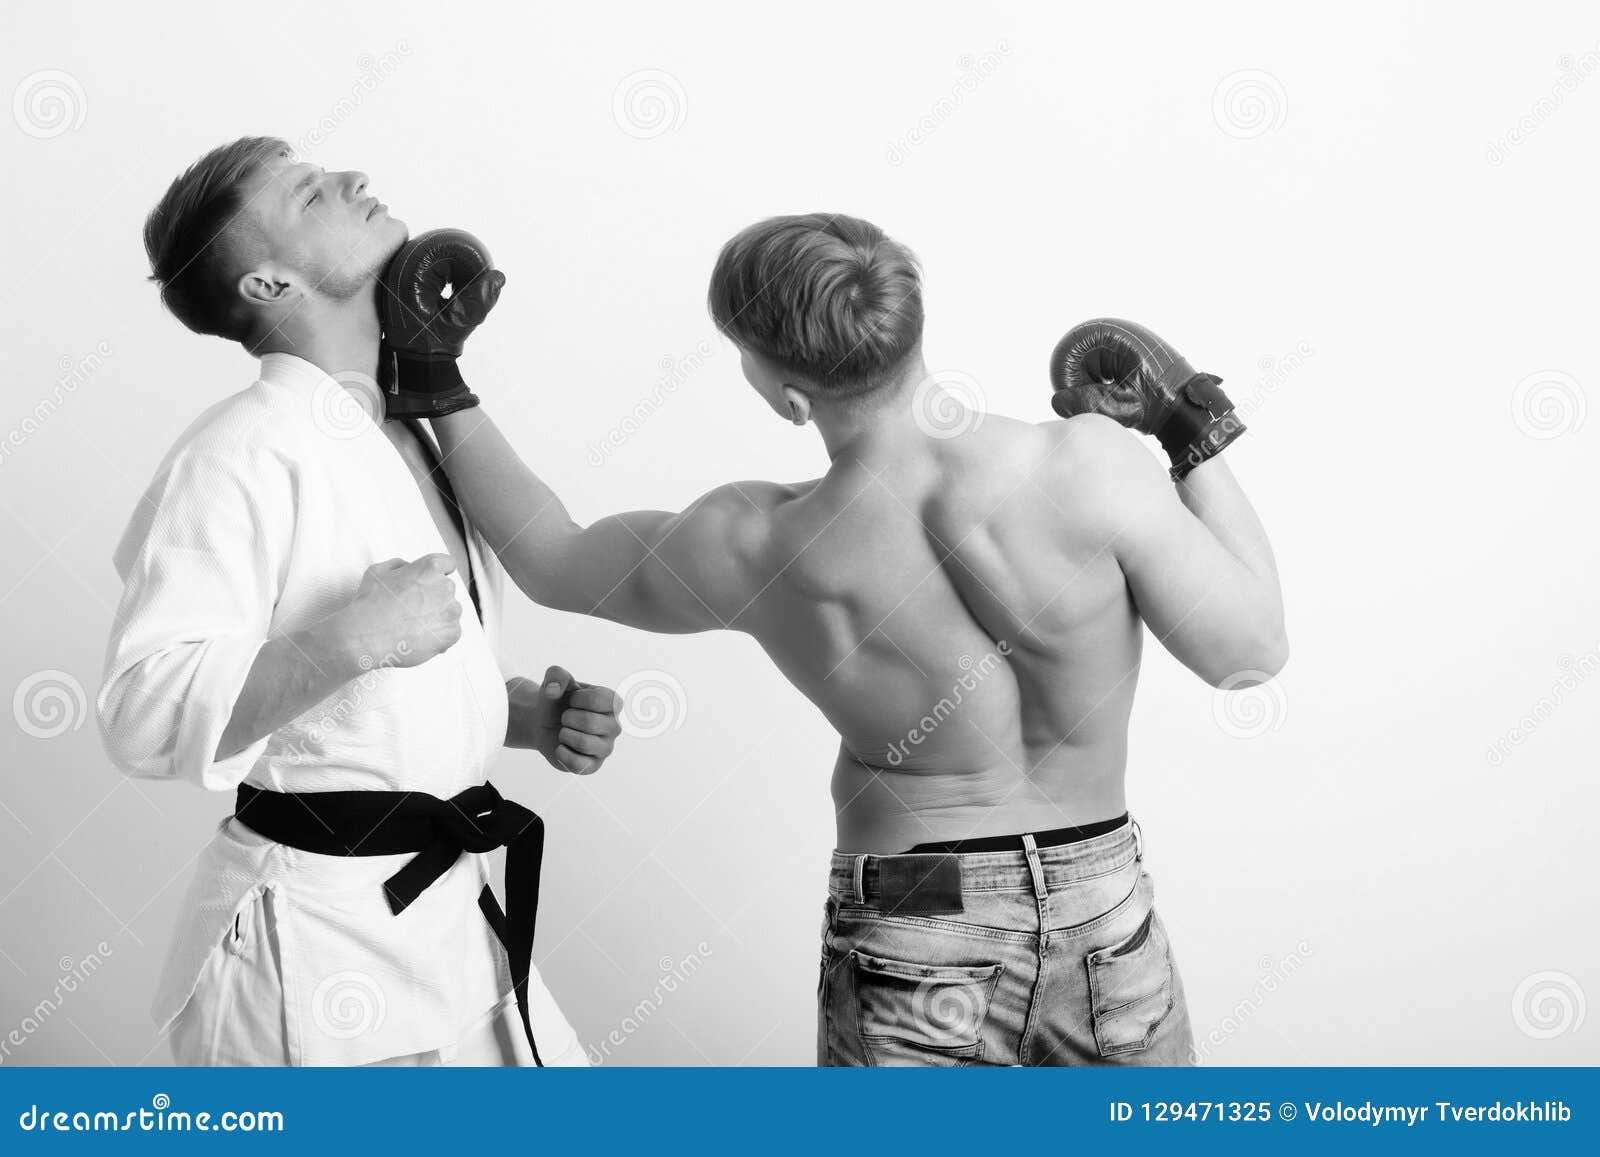 Nude Men Boxing